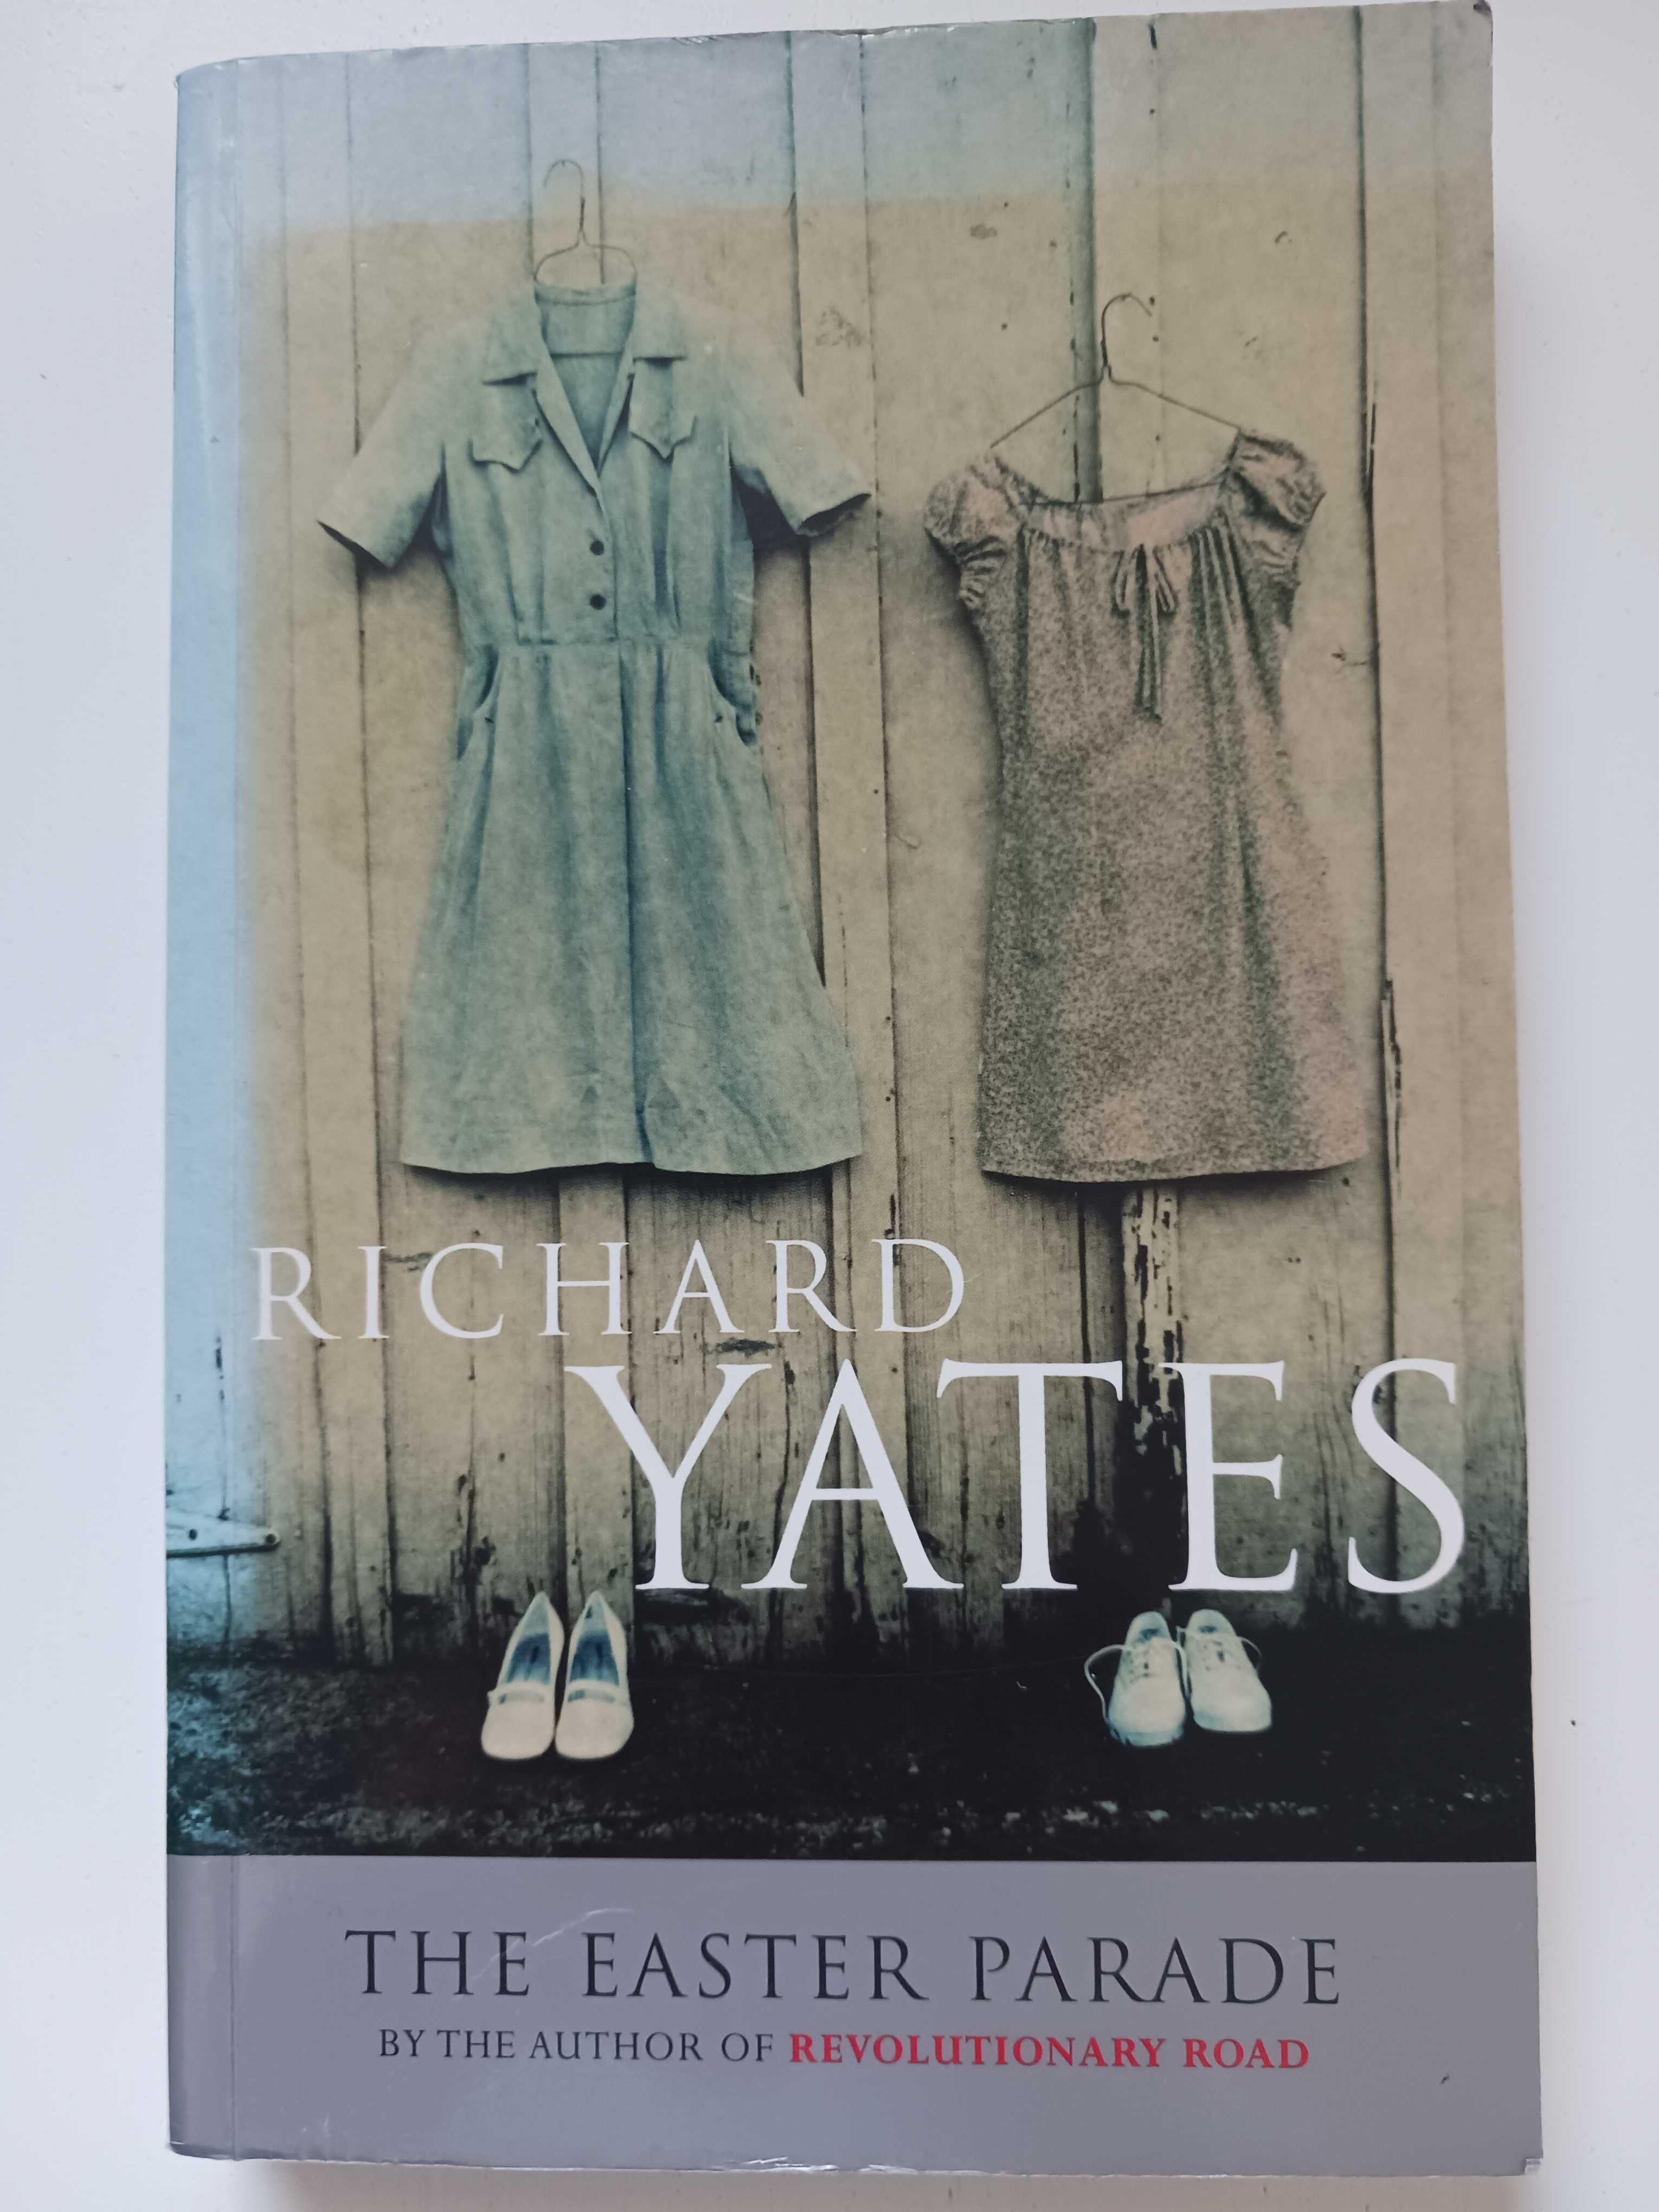 Richard Yates "The Easter Parade" książka po angielsku sprzedam